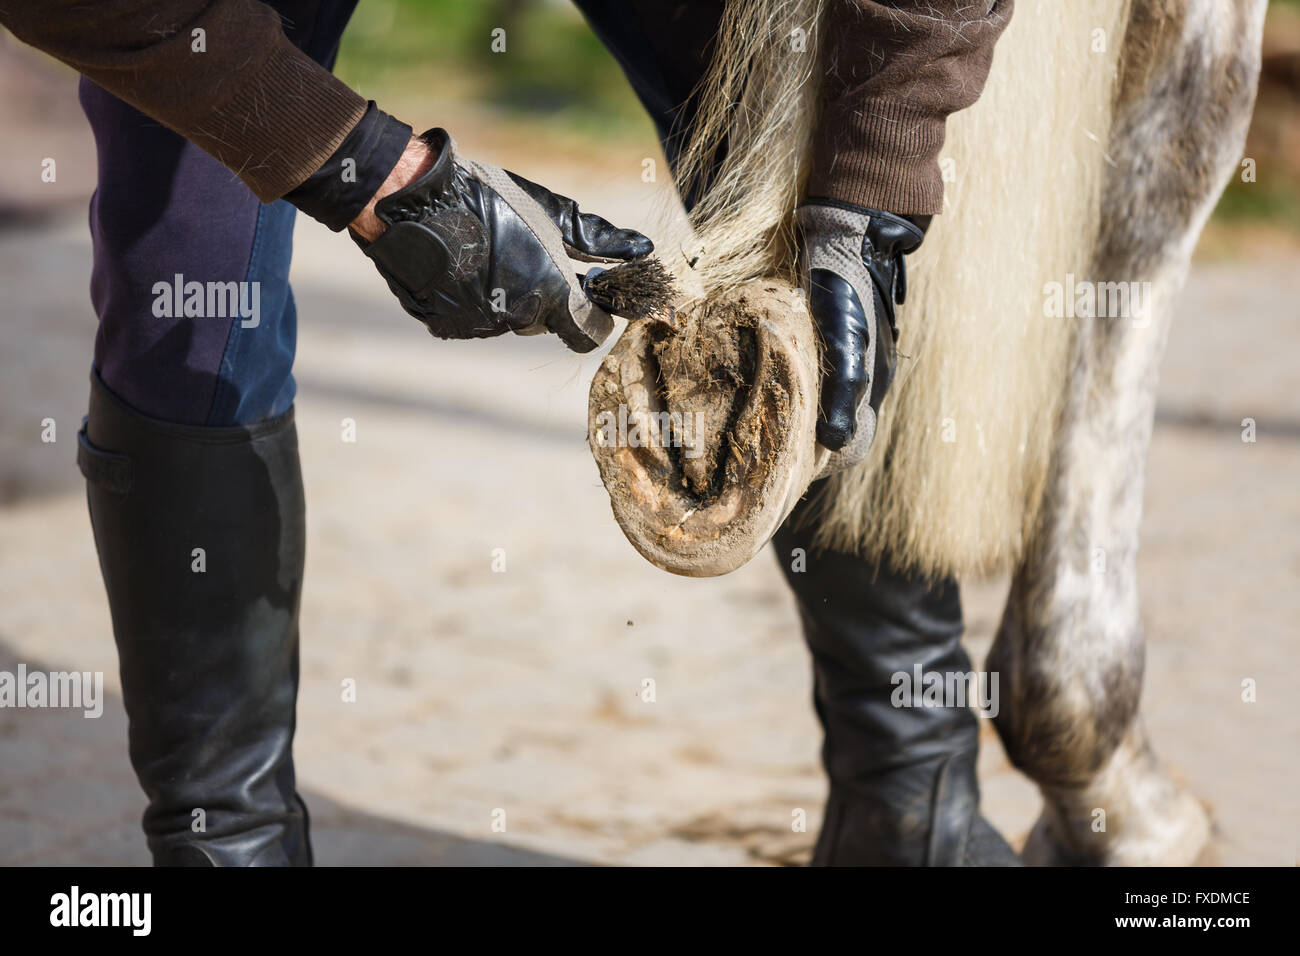 L'homme nettoie le sabot du cheval avant la formation Banque D'Images